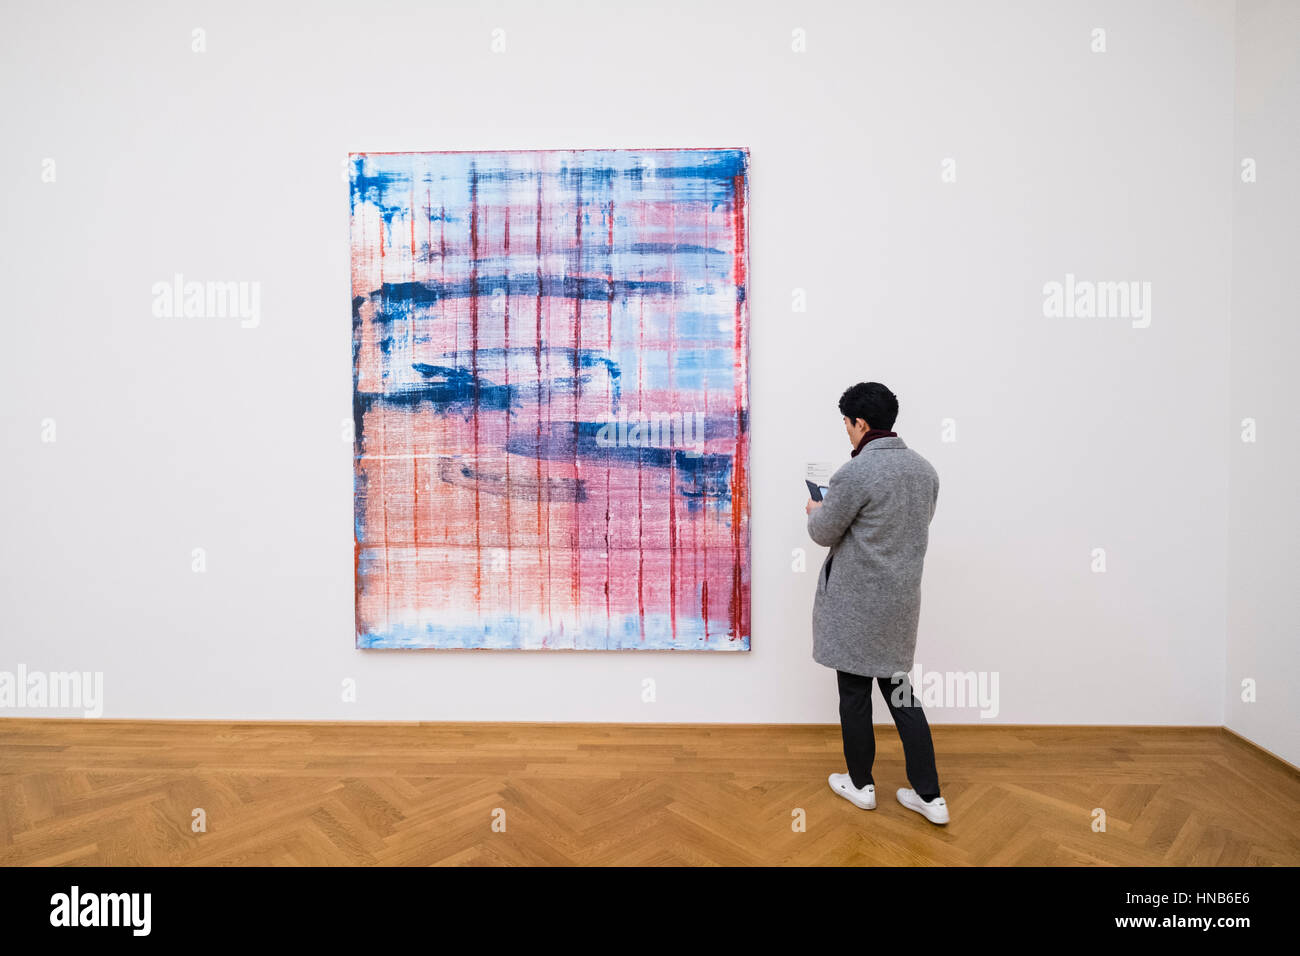 Peinture de Gerhard Richter, mars, au musée d'art Albertinum à Dresde, Allemagne. Banque D'Images